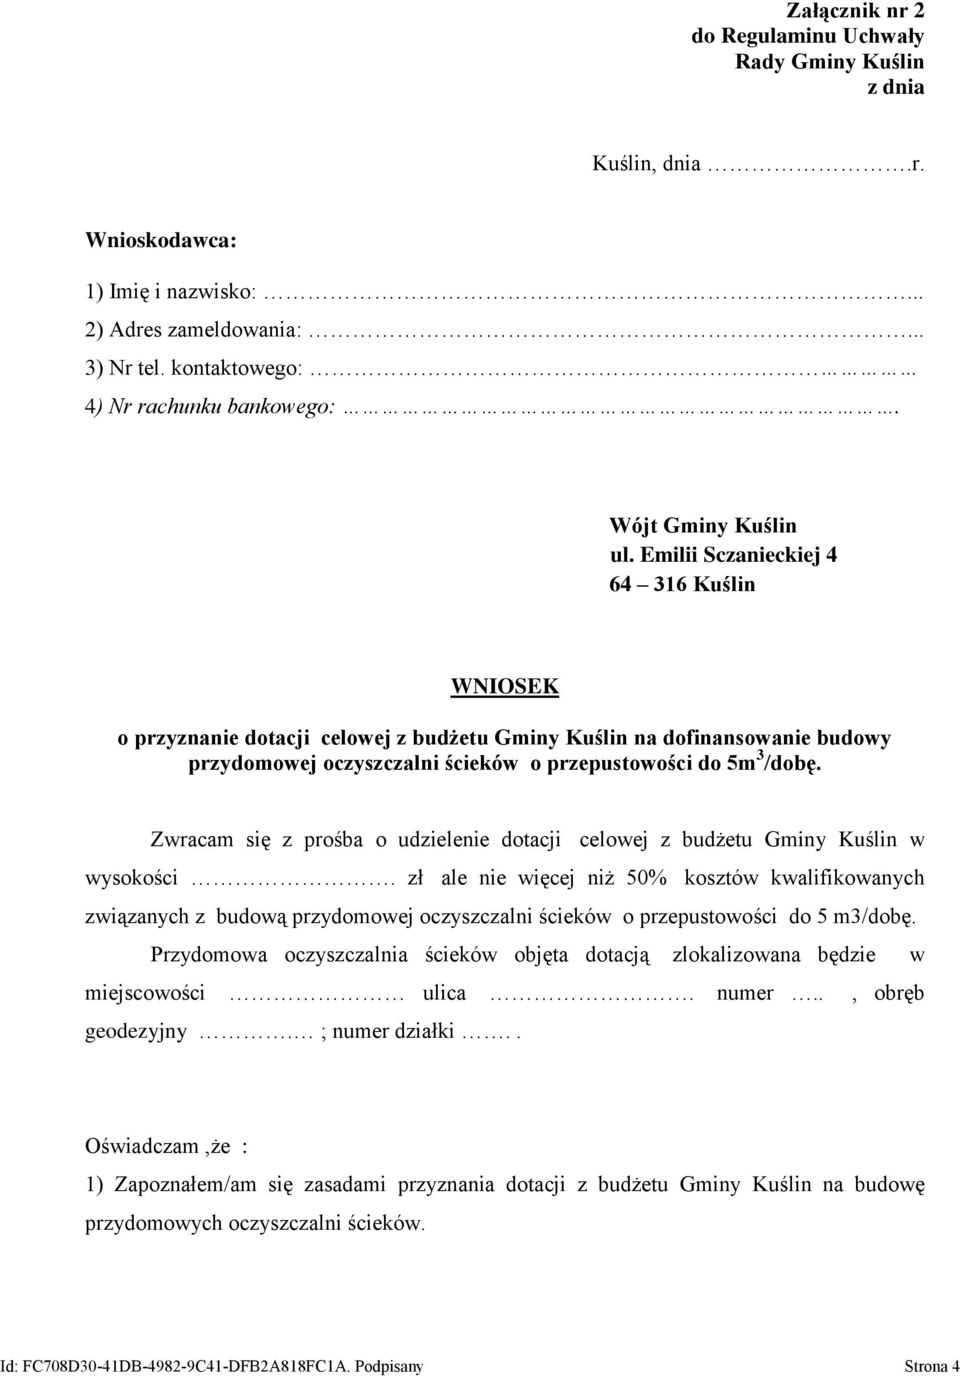 Emilii Sczanieckiej 4 64 316 Kuślin WNIOSEK o przyznanie dotacji celowej z budżetu Gminy Kuślin na dofinansowanie budowy przydomowej oczyszczalni ścieków o przepustowości do 5m 3 /dobę.